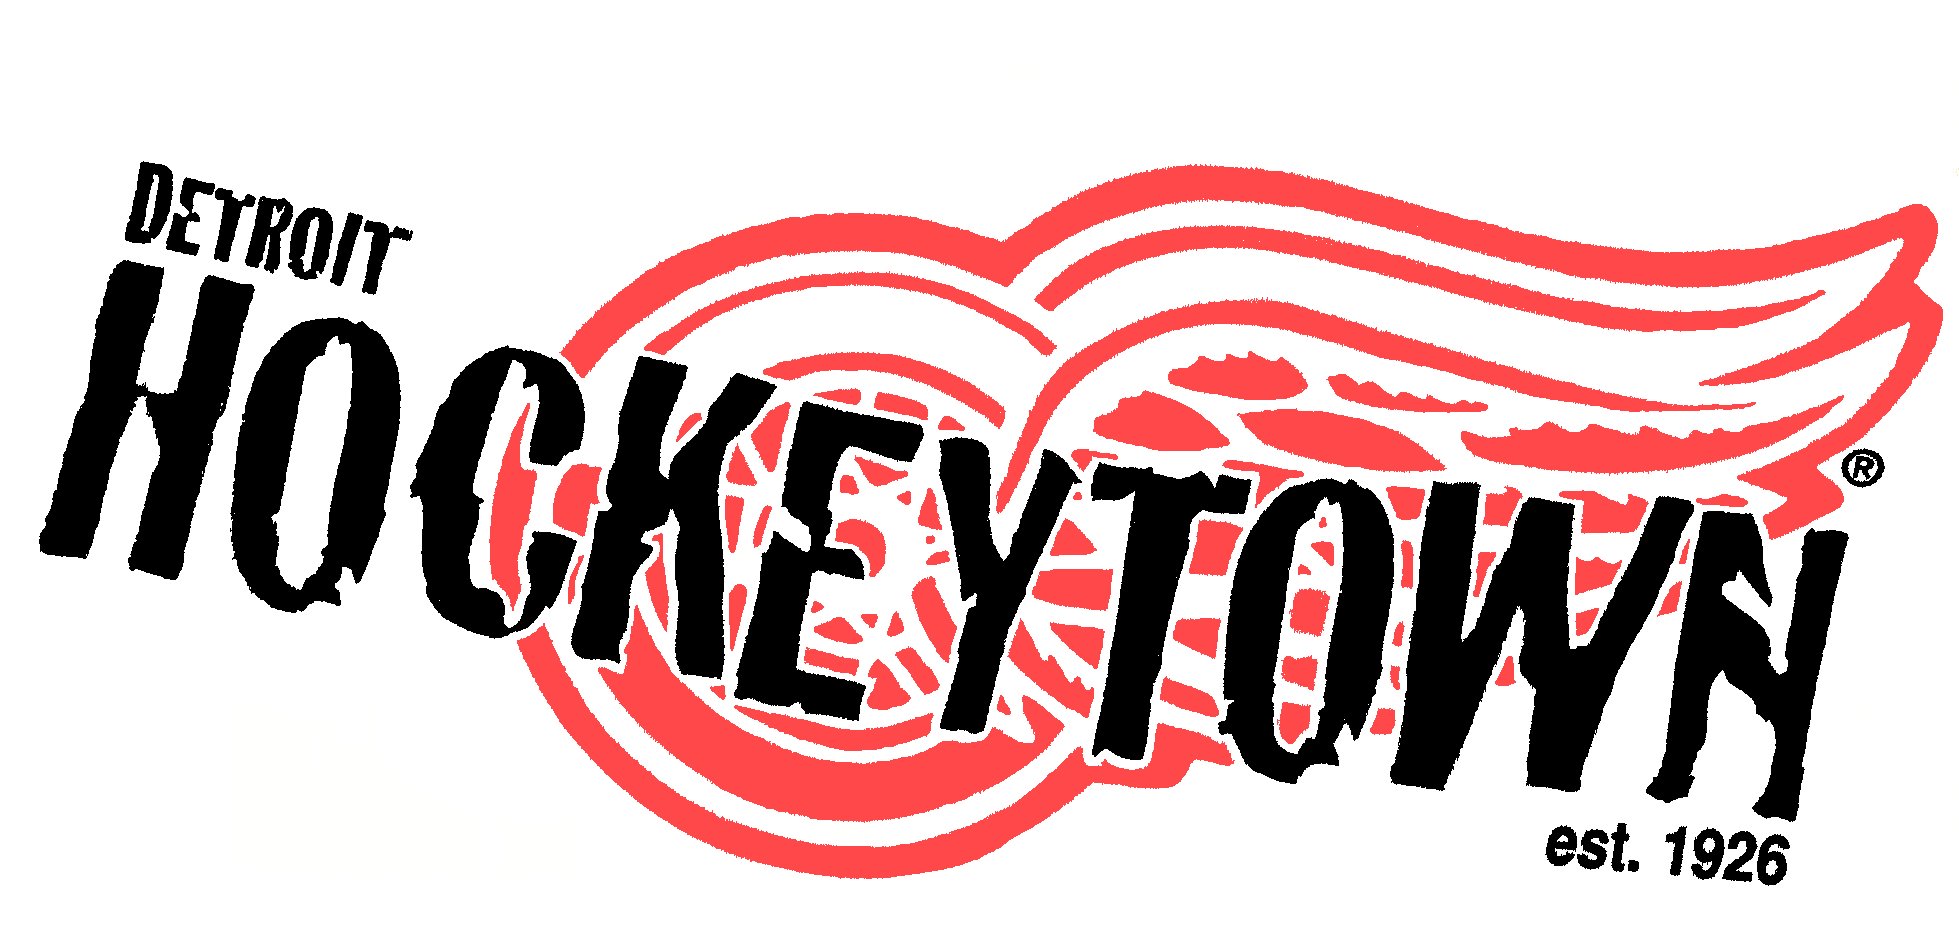 Detroit Red Wings Hockeytown Logo Diymid